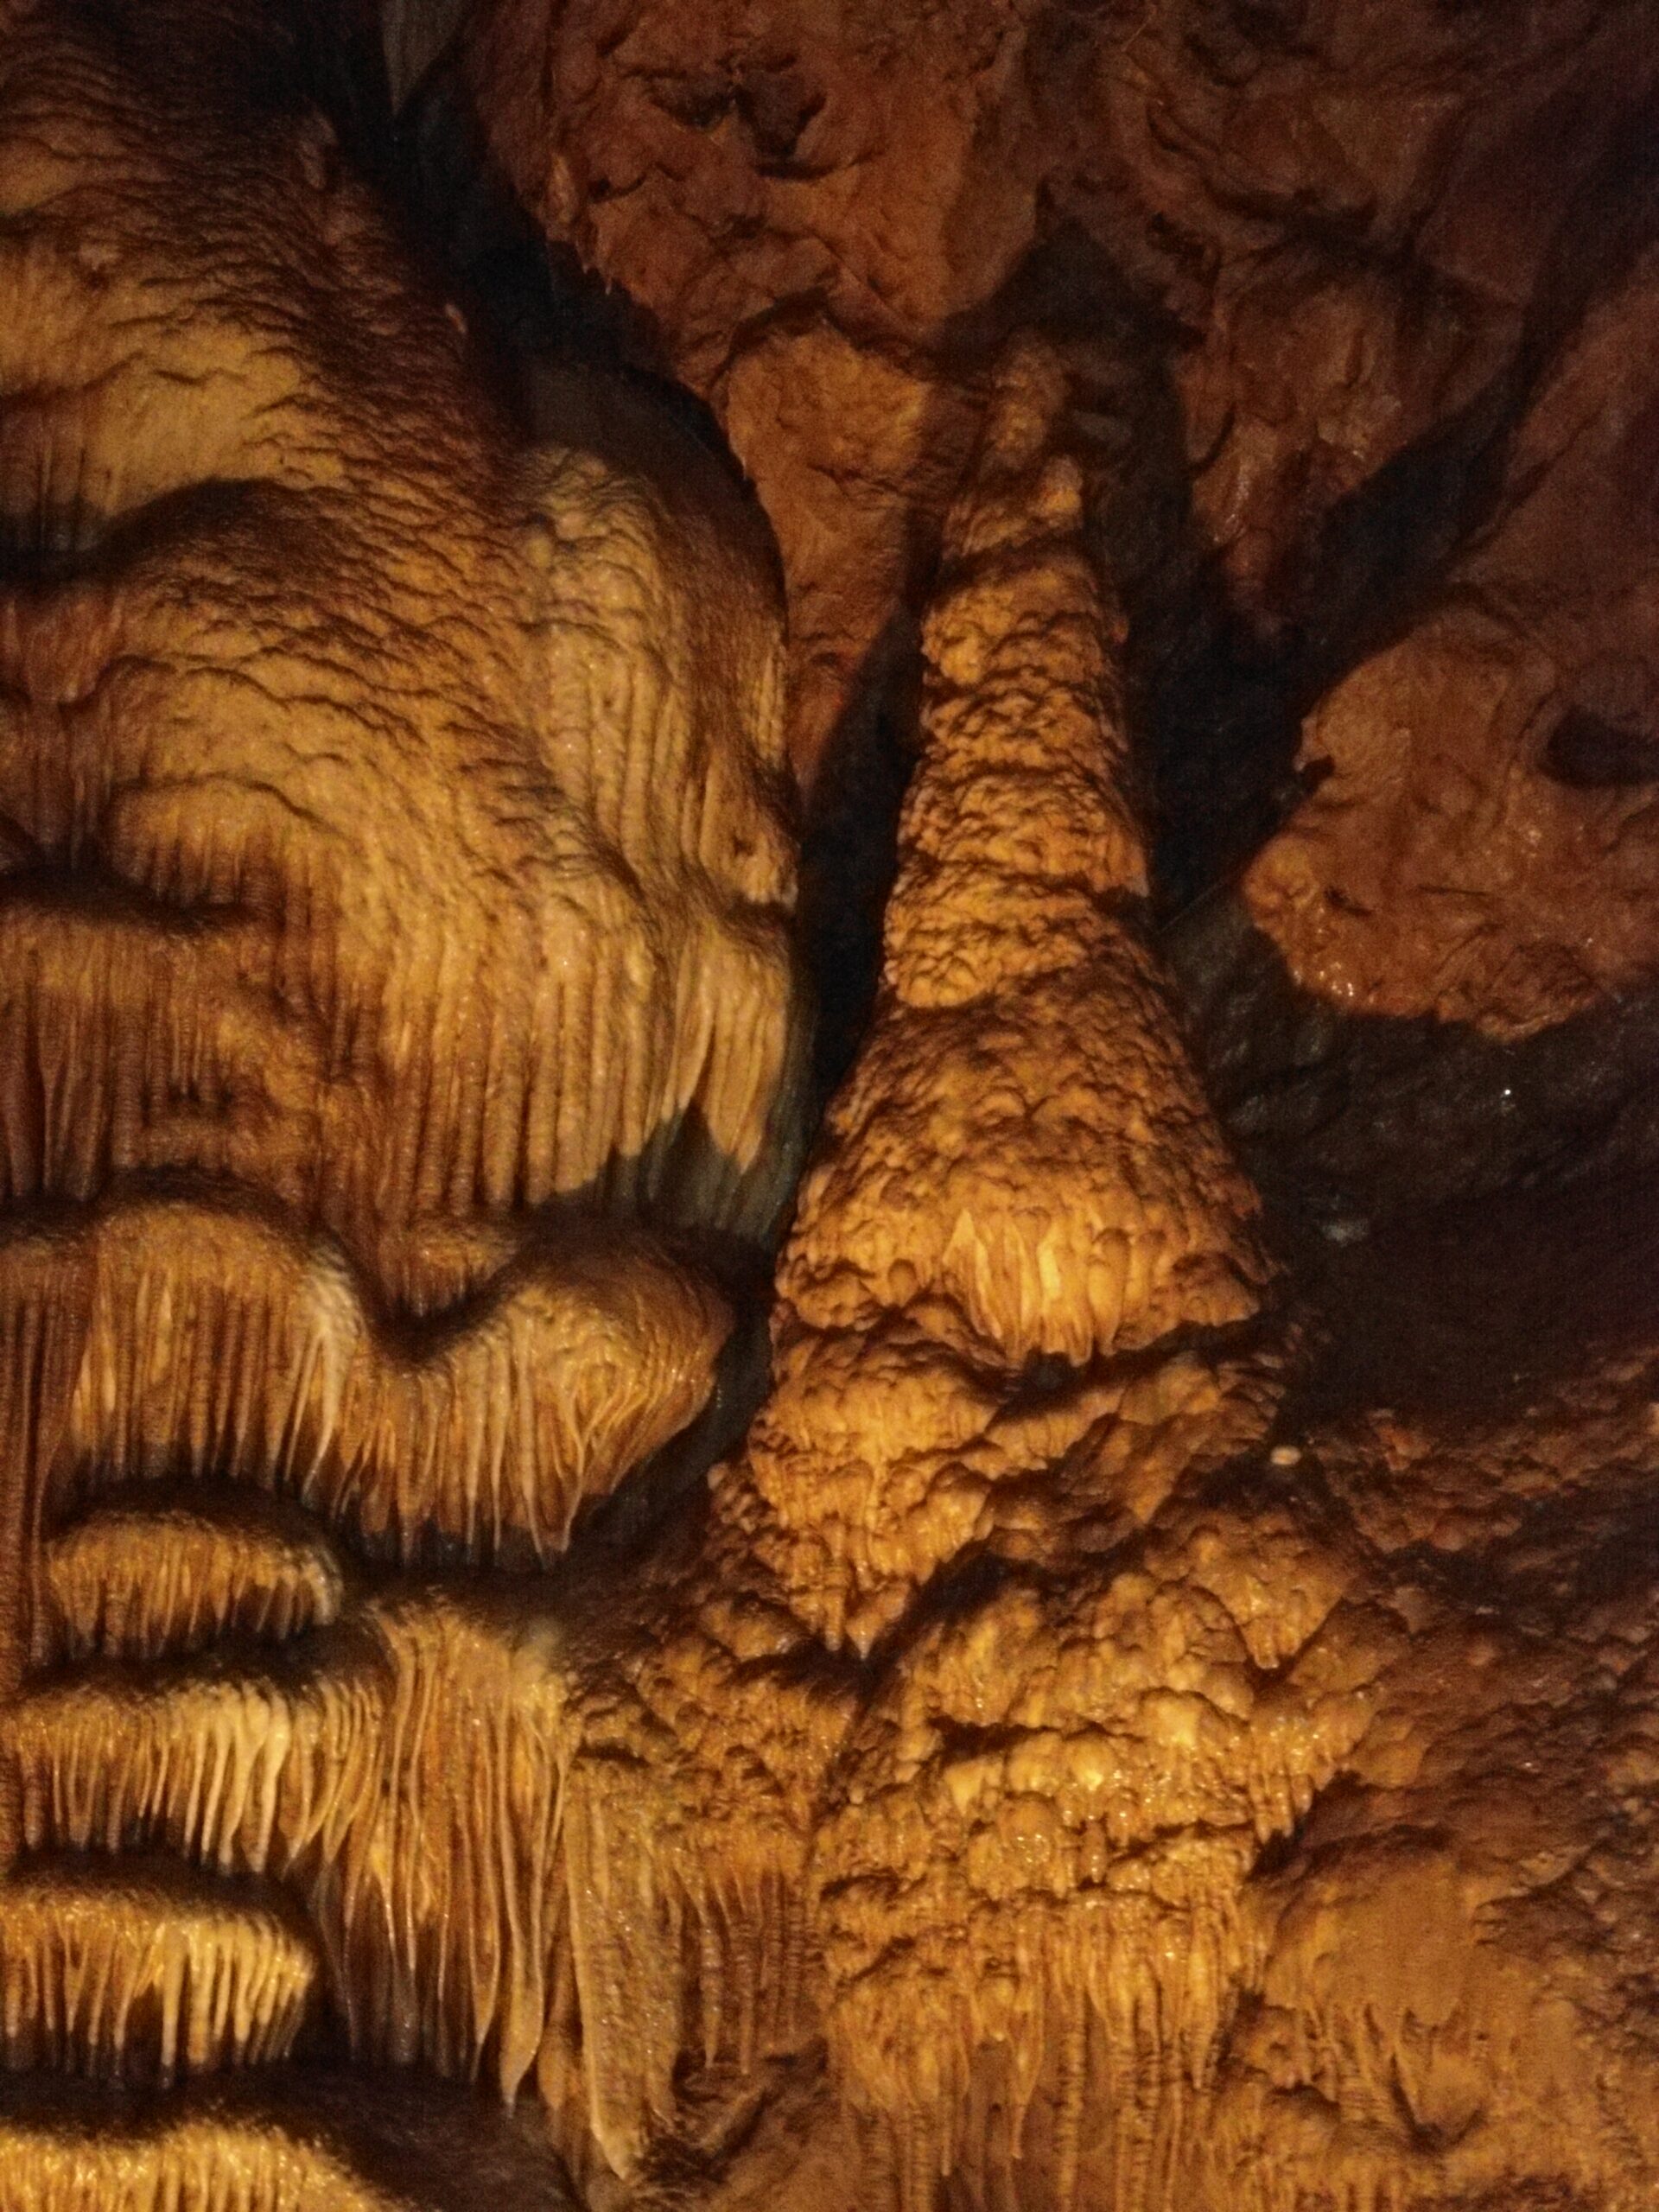 Grotte de Comblain - Endroit insolite à Comblain-au-Pont, en Belgique